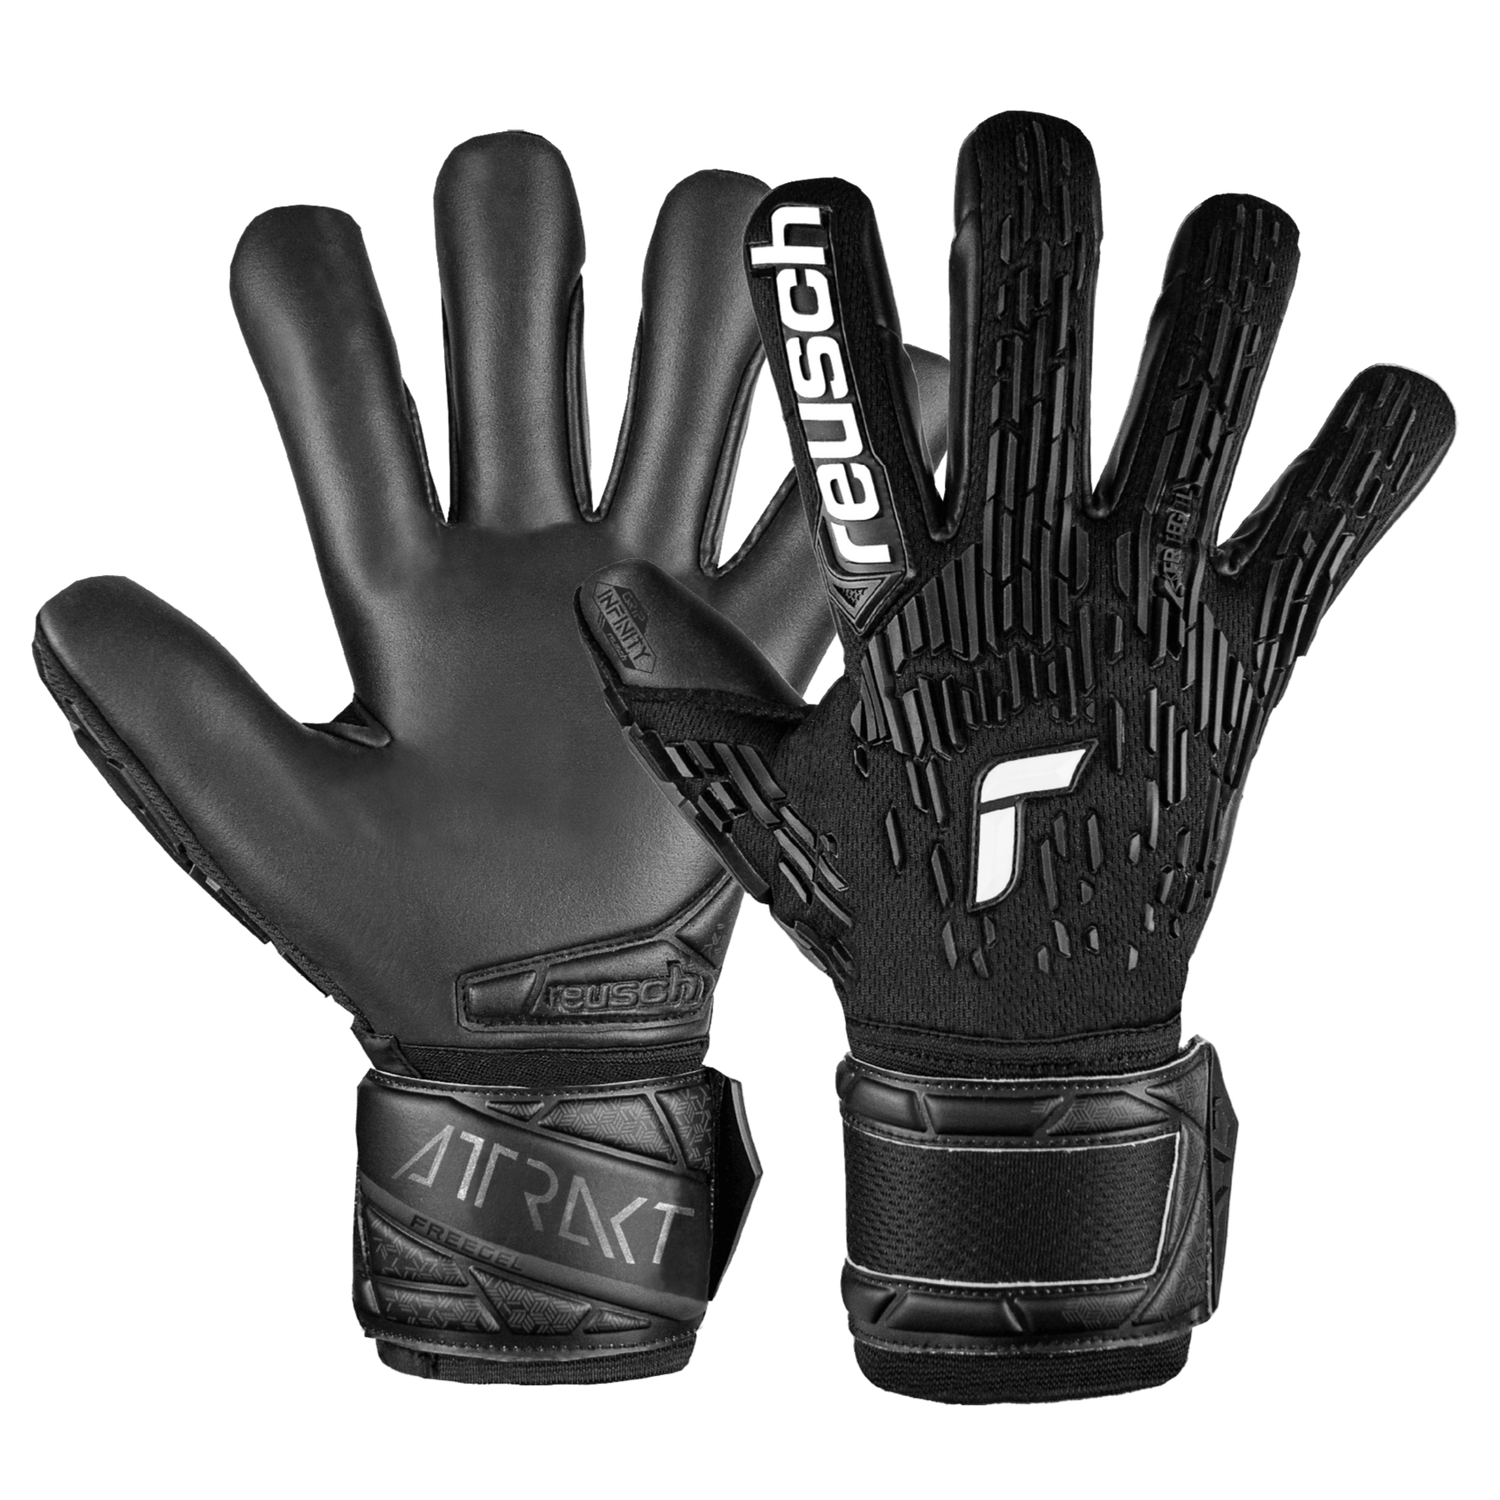 Reusch Attrakt Freegel Infinity FS Goalkeeper Gloves (Set)